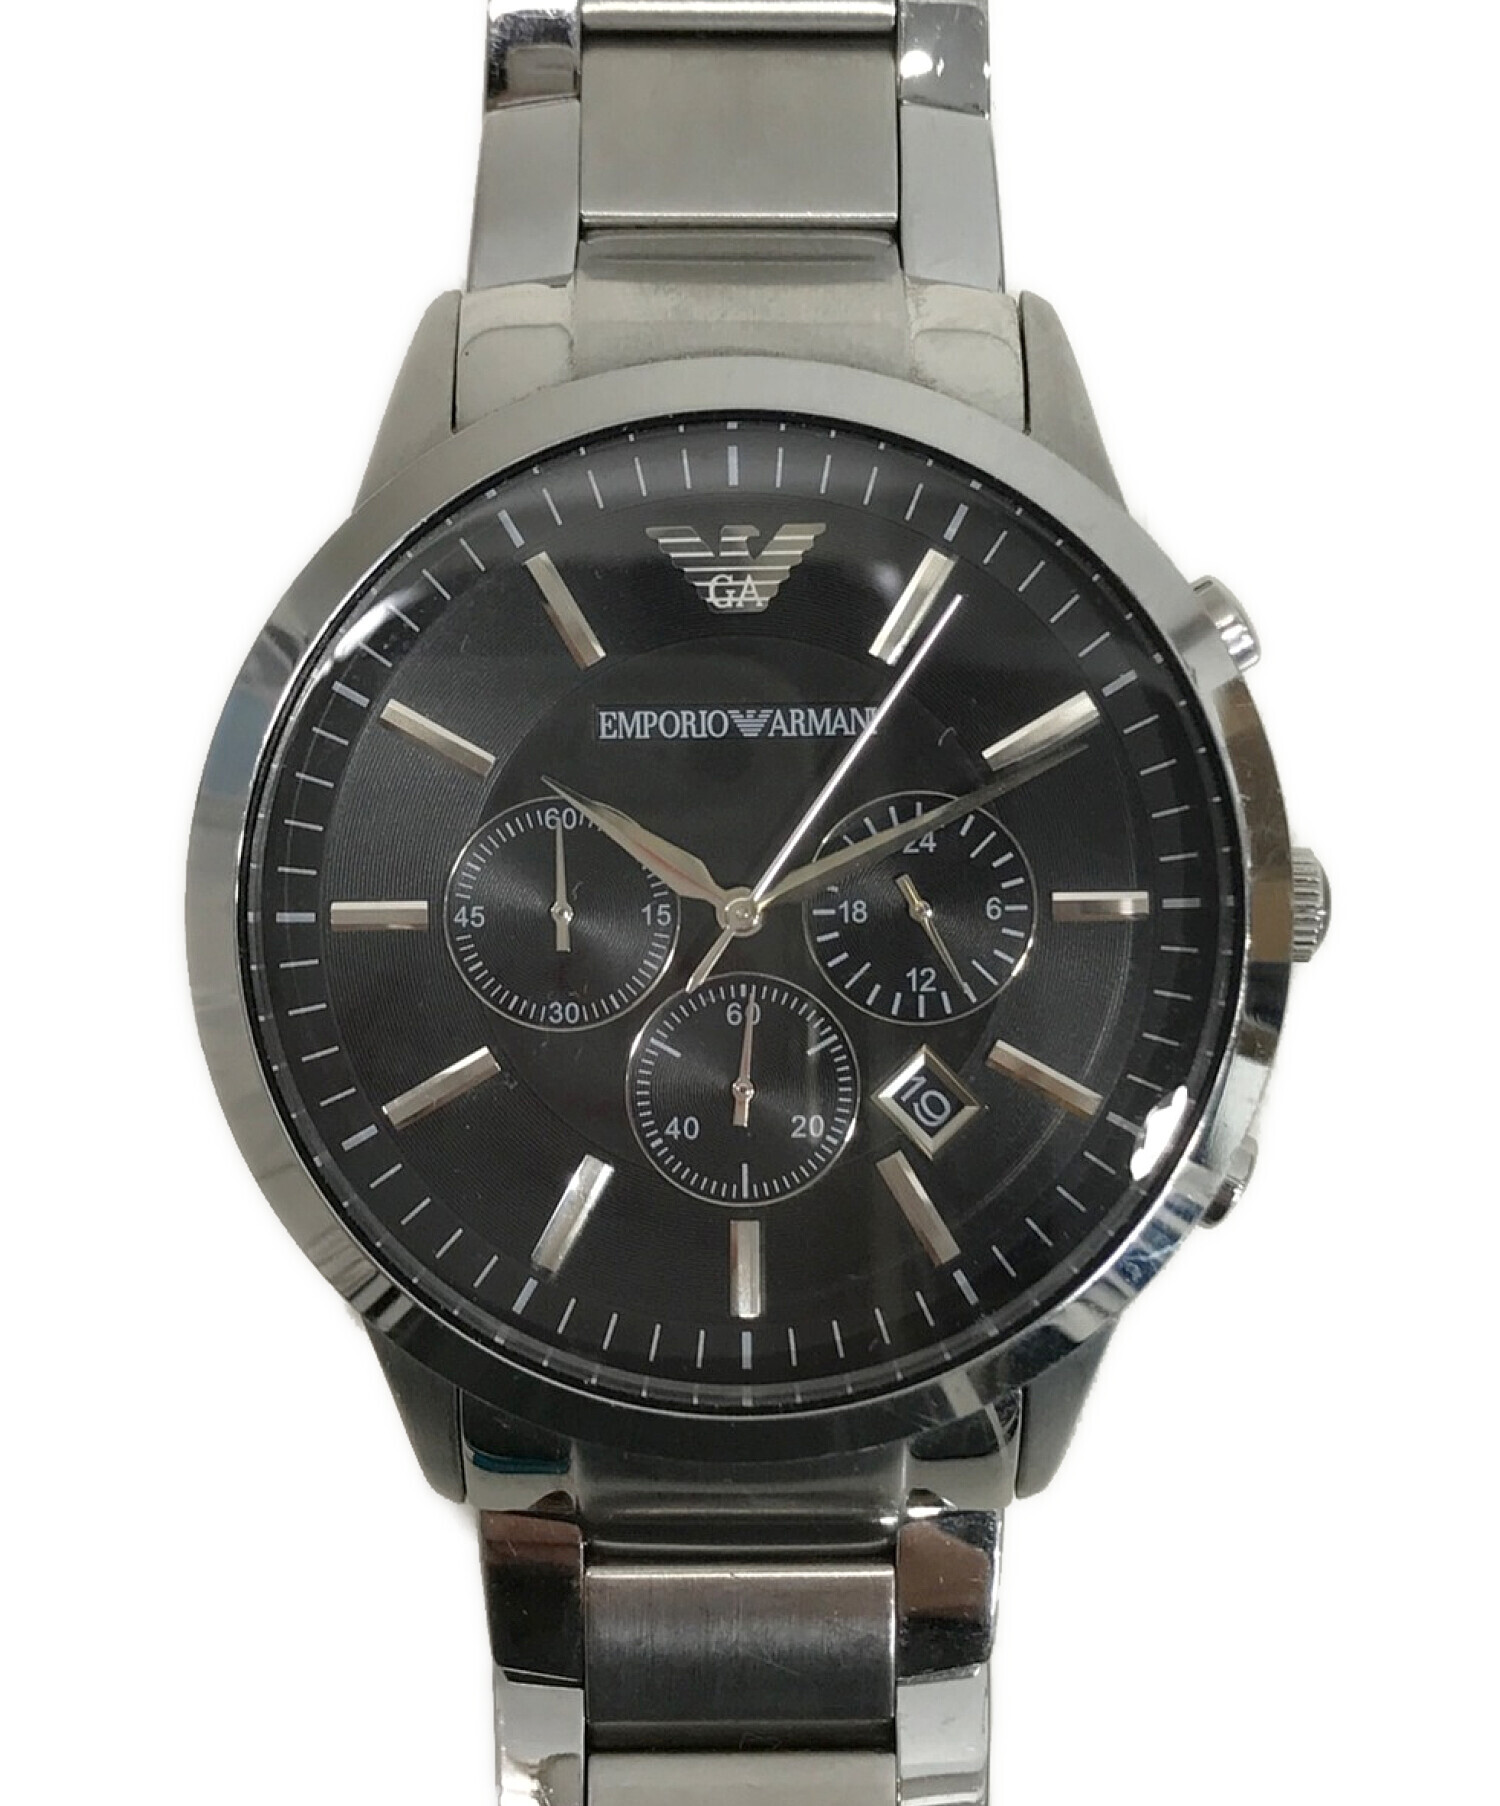 EMPORIO ARMANI (エンポリオアルマーニ) 腕時計 ブラック